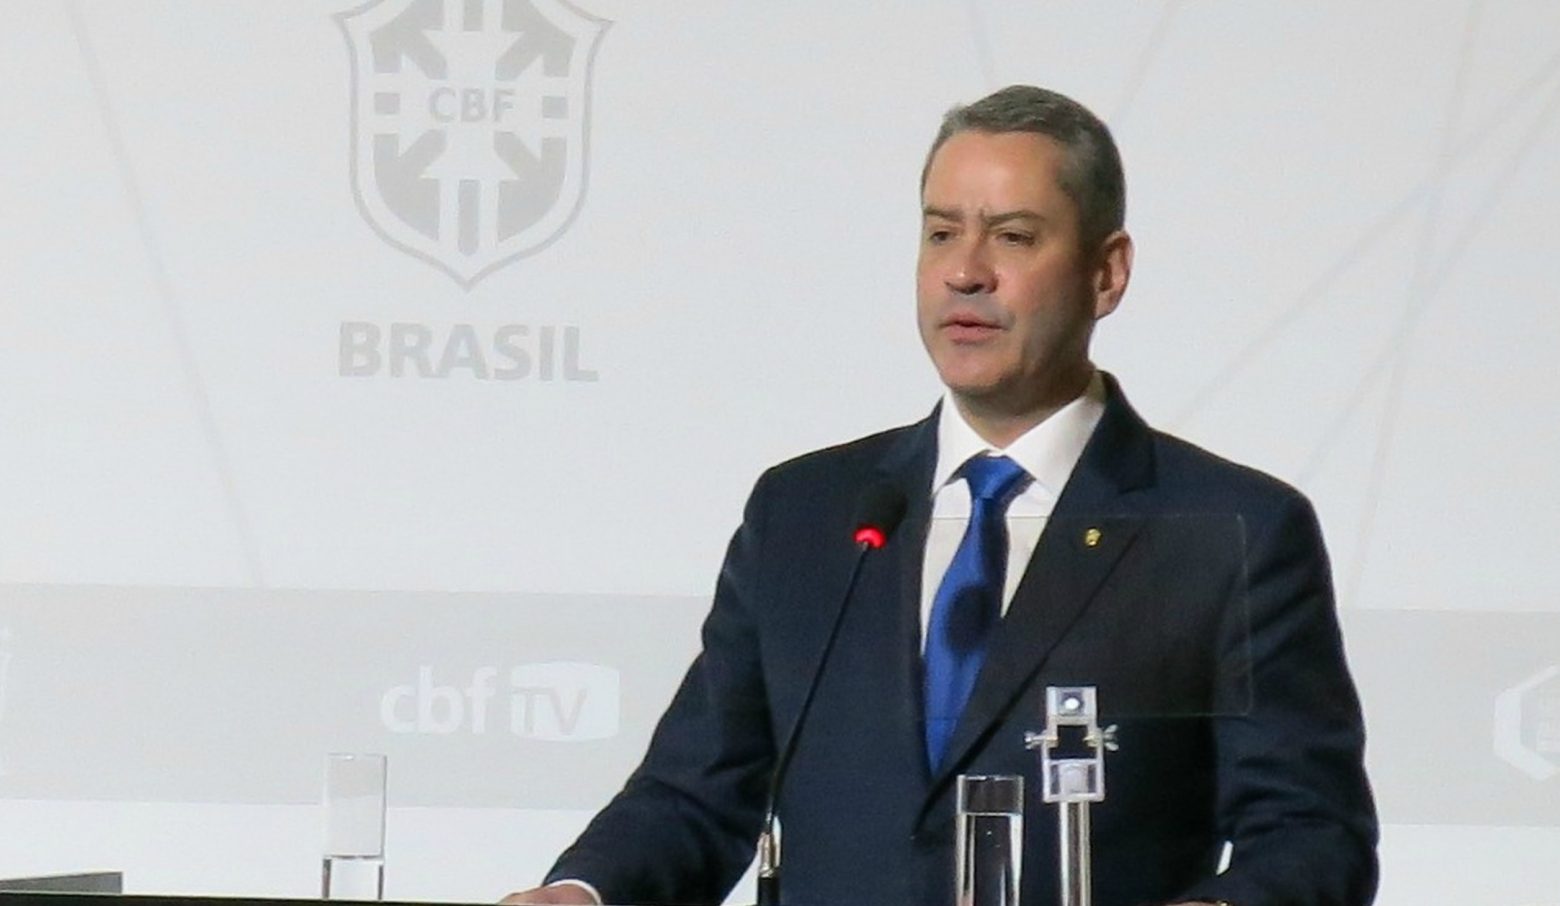 Χαμός στην Βραζιλία: Καταγγελίες εναντίον του προέδρου της ποδοσφαιρικής ομοσπονδίας για σεξουαλική παρενόχληση